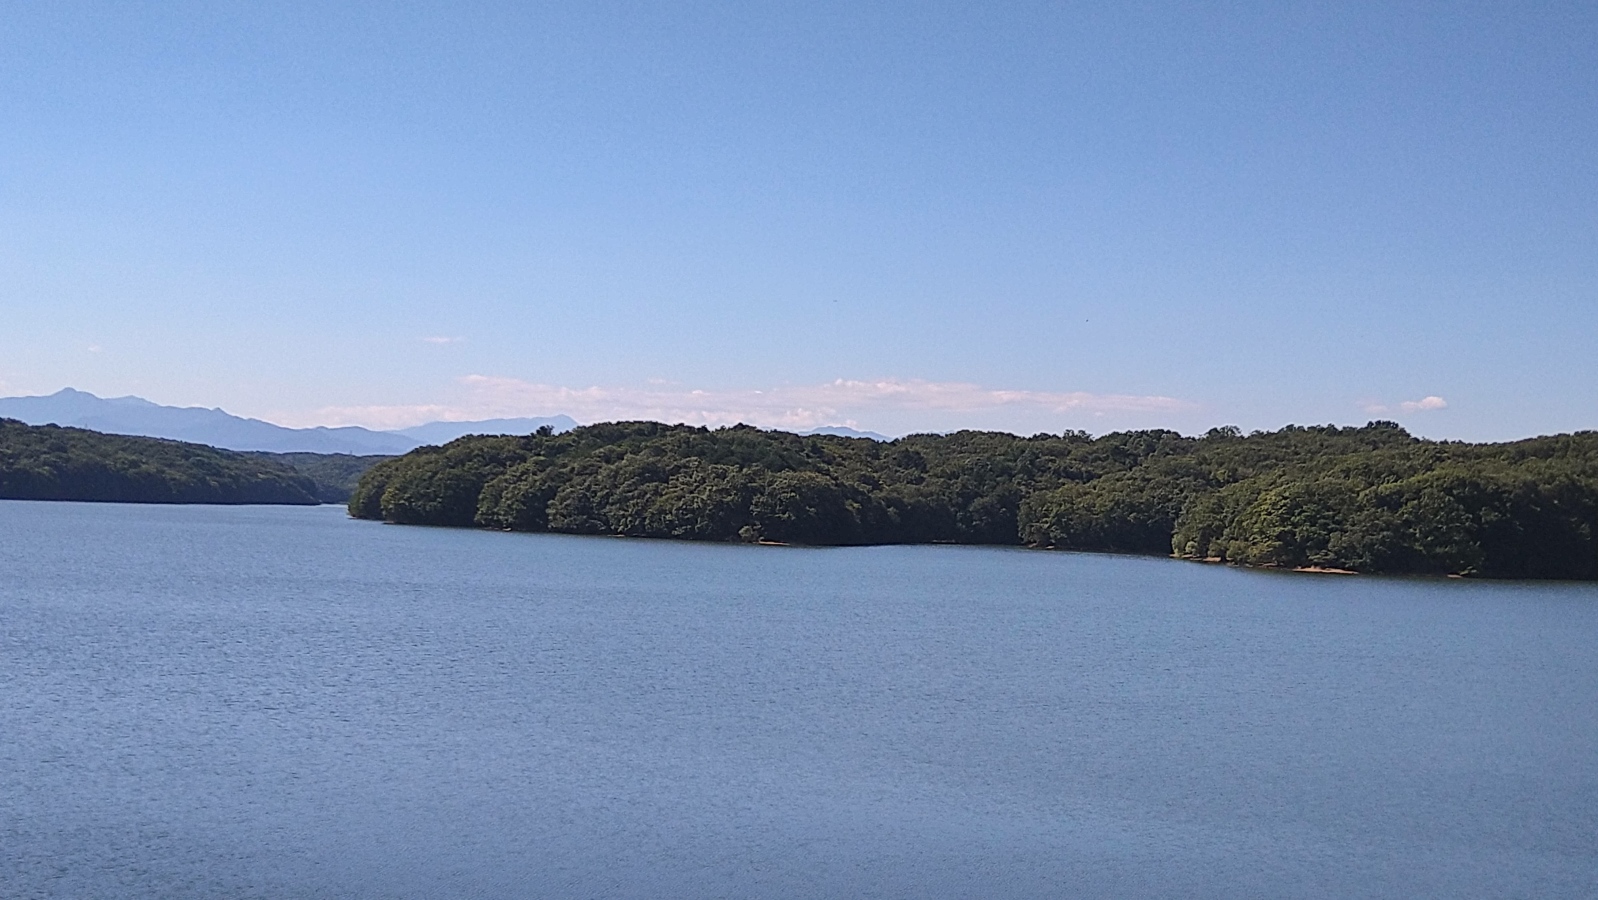 狭山湖越しの遠景